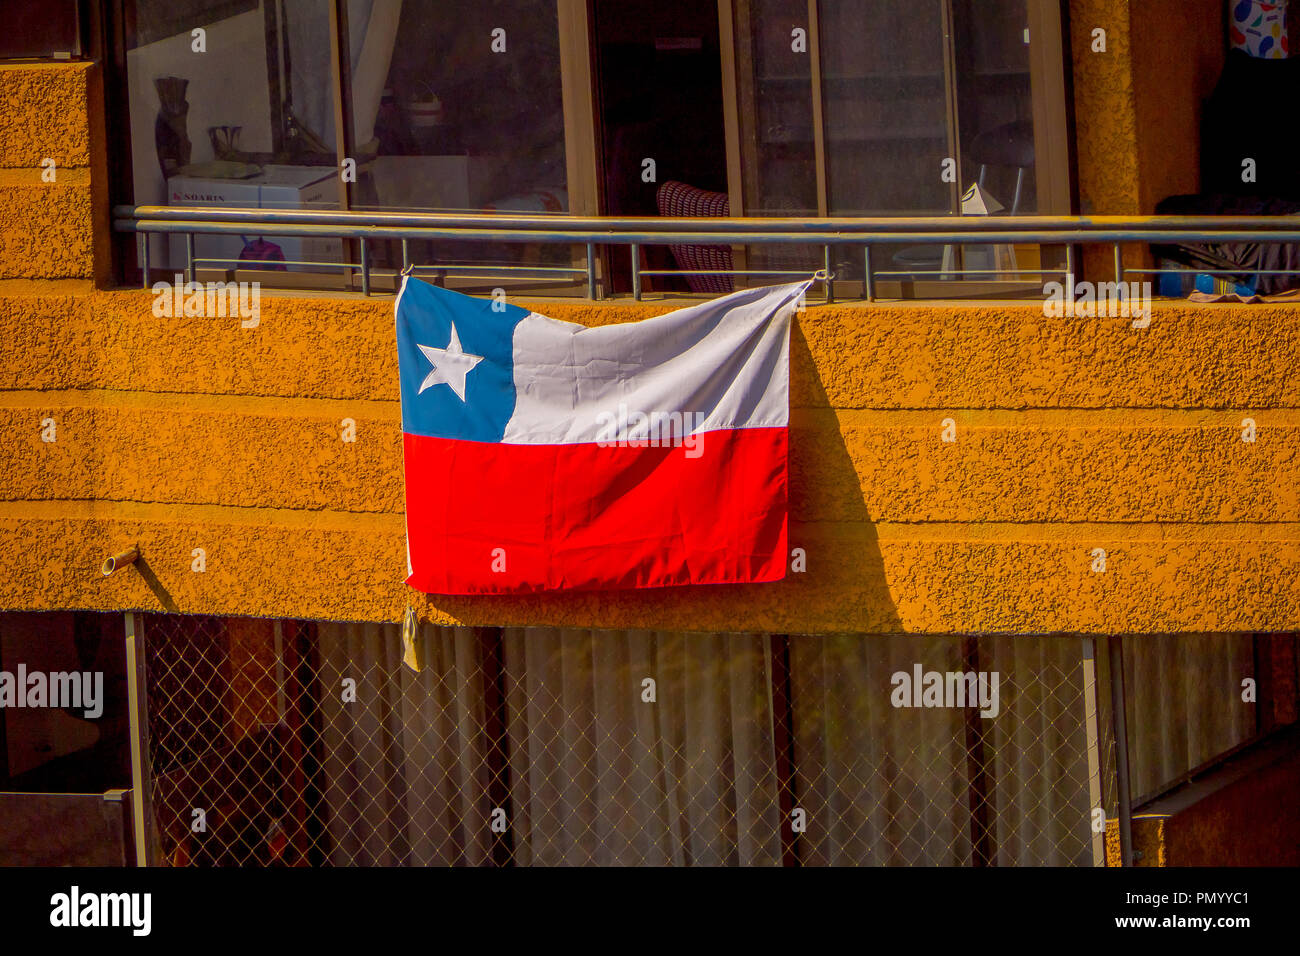 santiago-chile-septiembre-13-2018-vista-exterior-de-bandera-chilena-colgada-de-un-balcon-de-un-edificio-en-la-ciudad-de-santiago-de-chile-pmyyc1.jpg